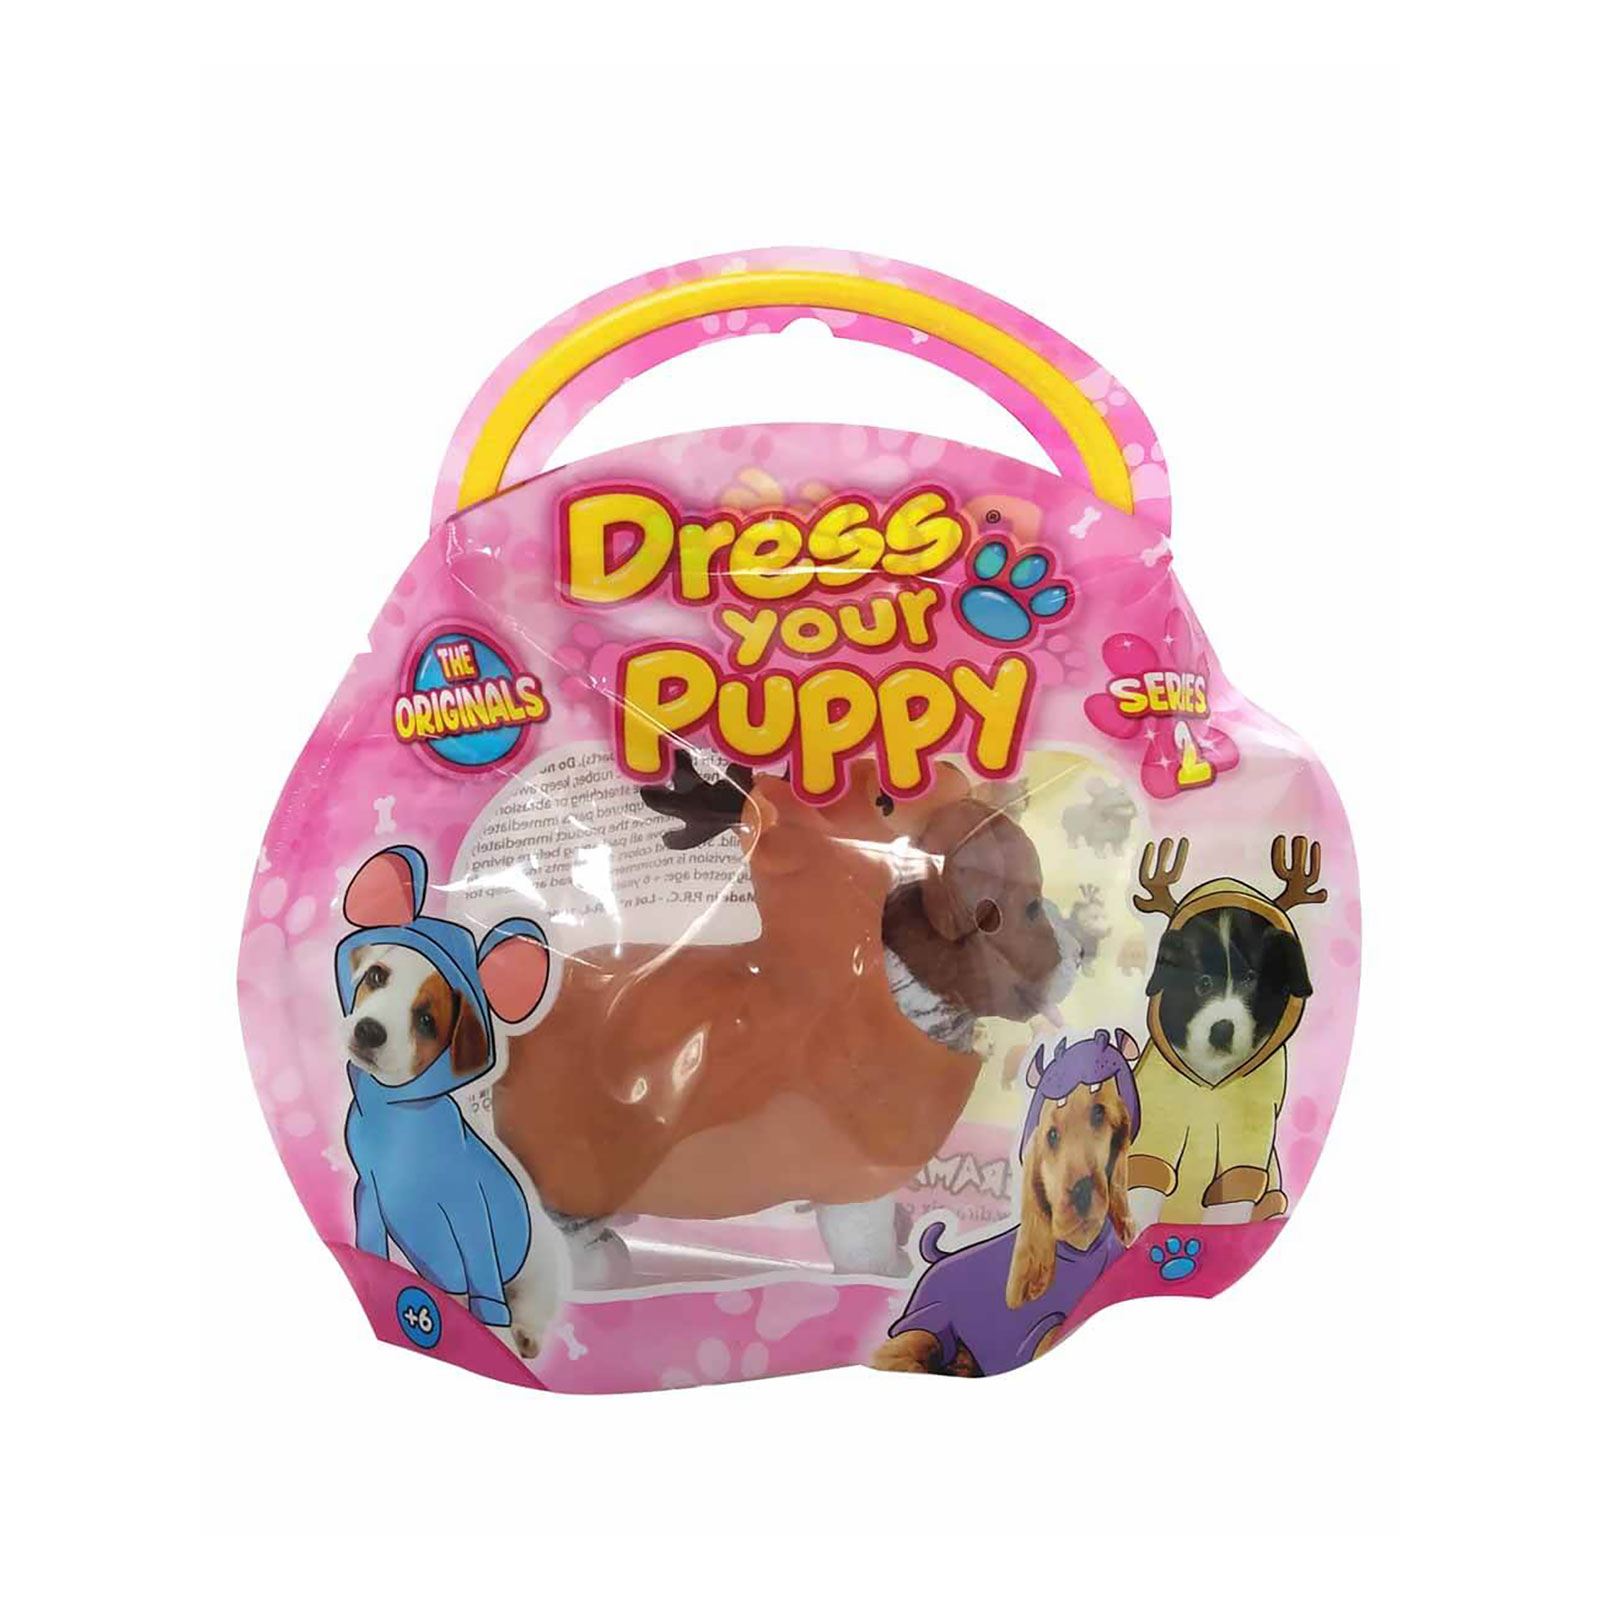 Sunman Oyuncak Diramix Dress Your Puppy Kostümlü Figürler Kahverengi